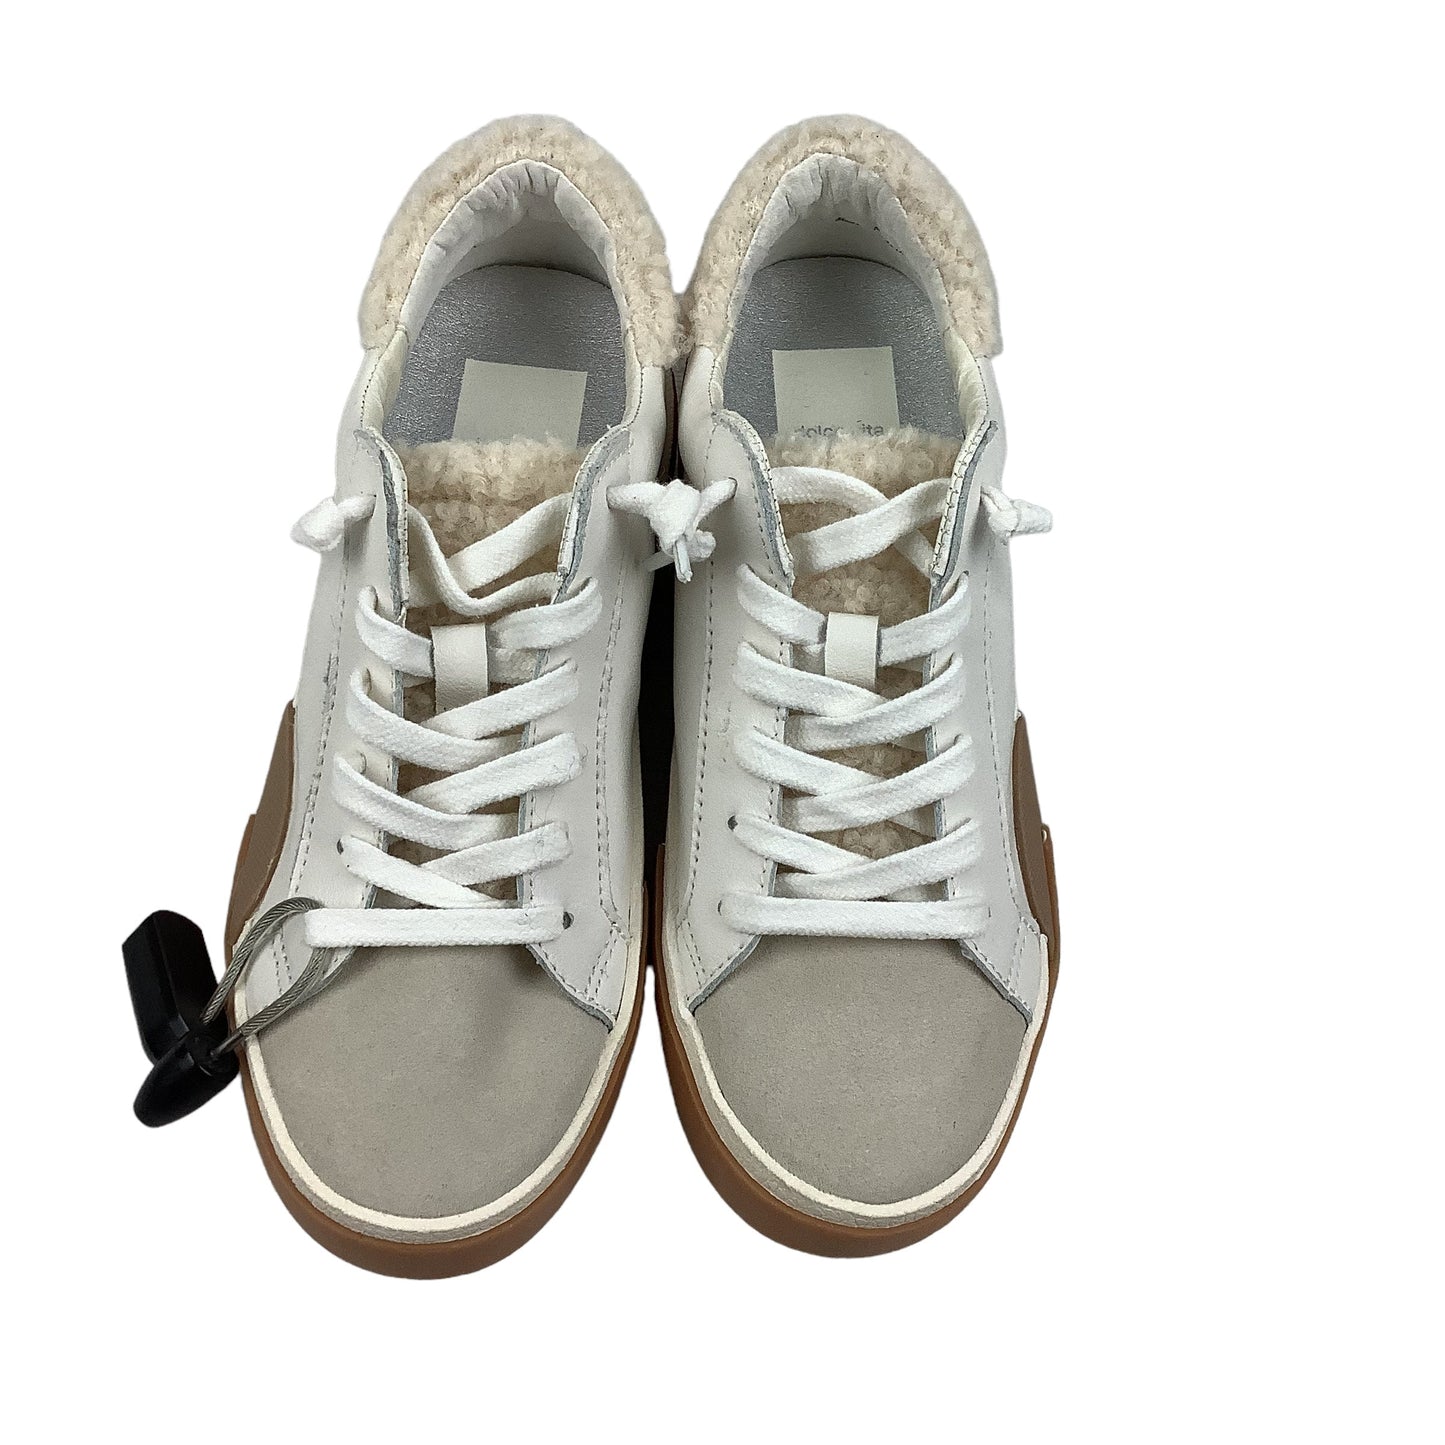 Tan & White Shoes Sneakers Dolce Vita, Size 5